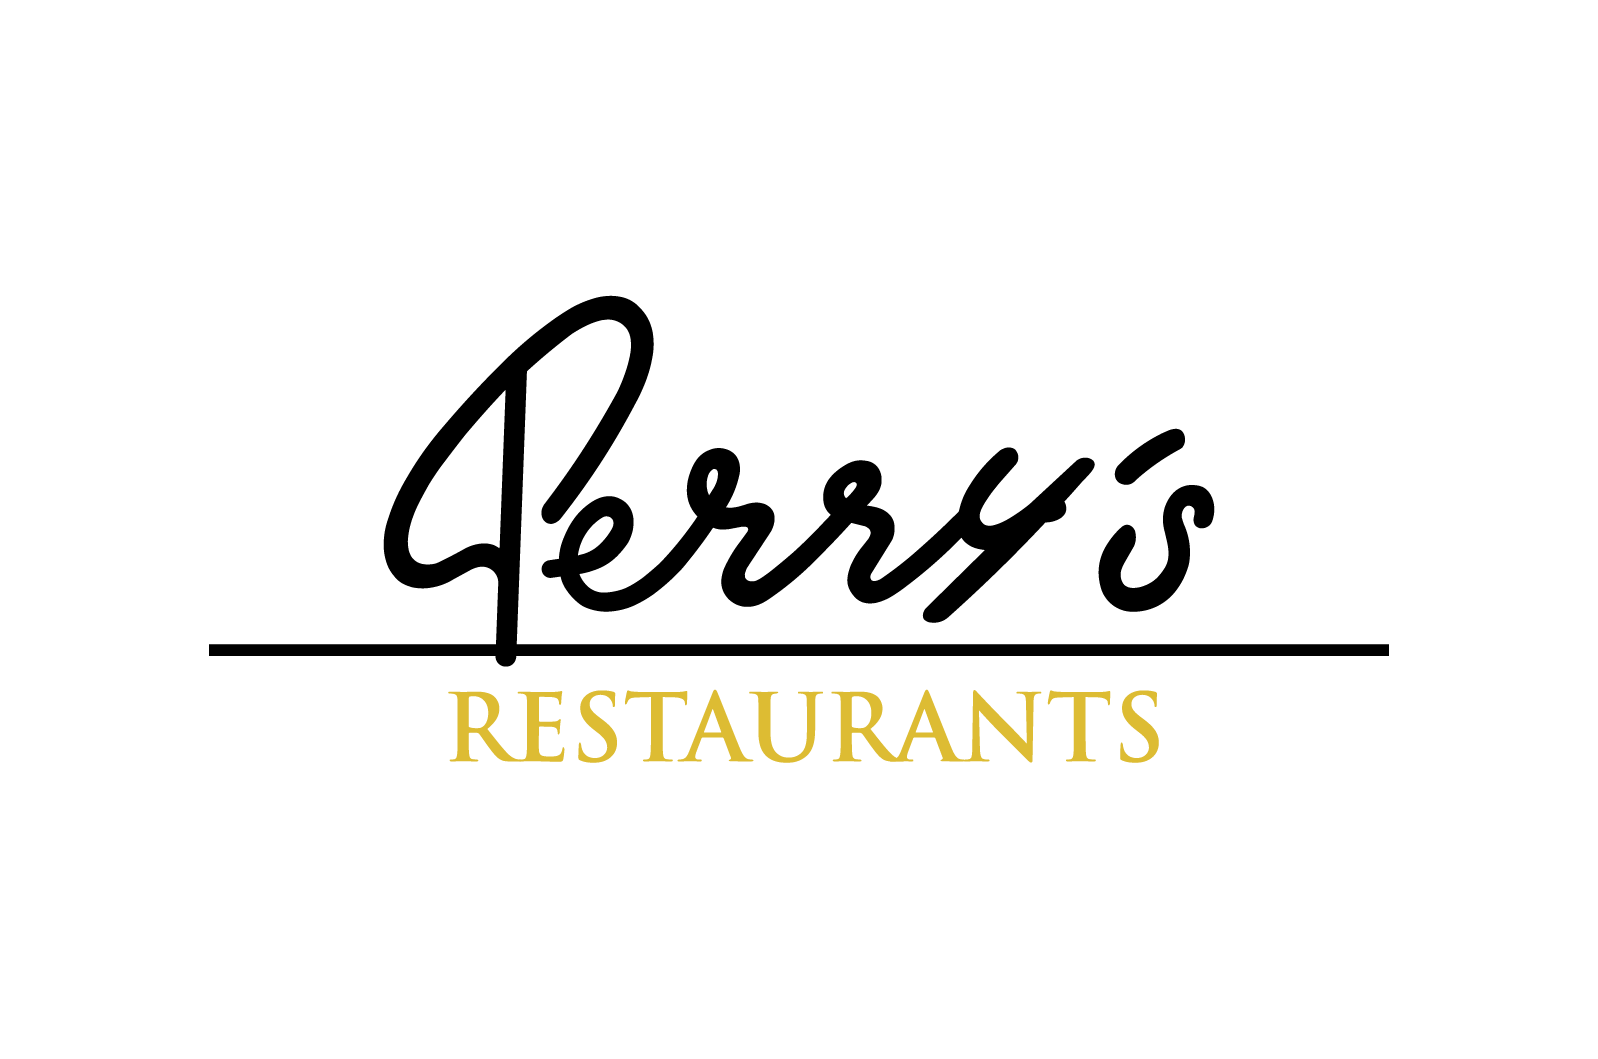 Perry's Restaurants